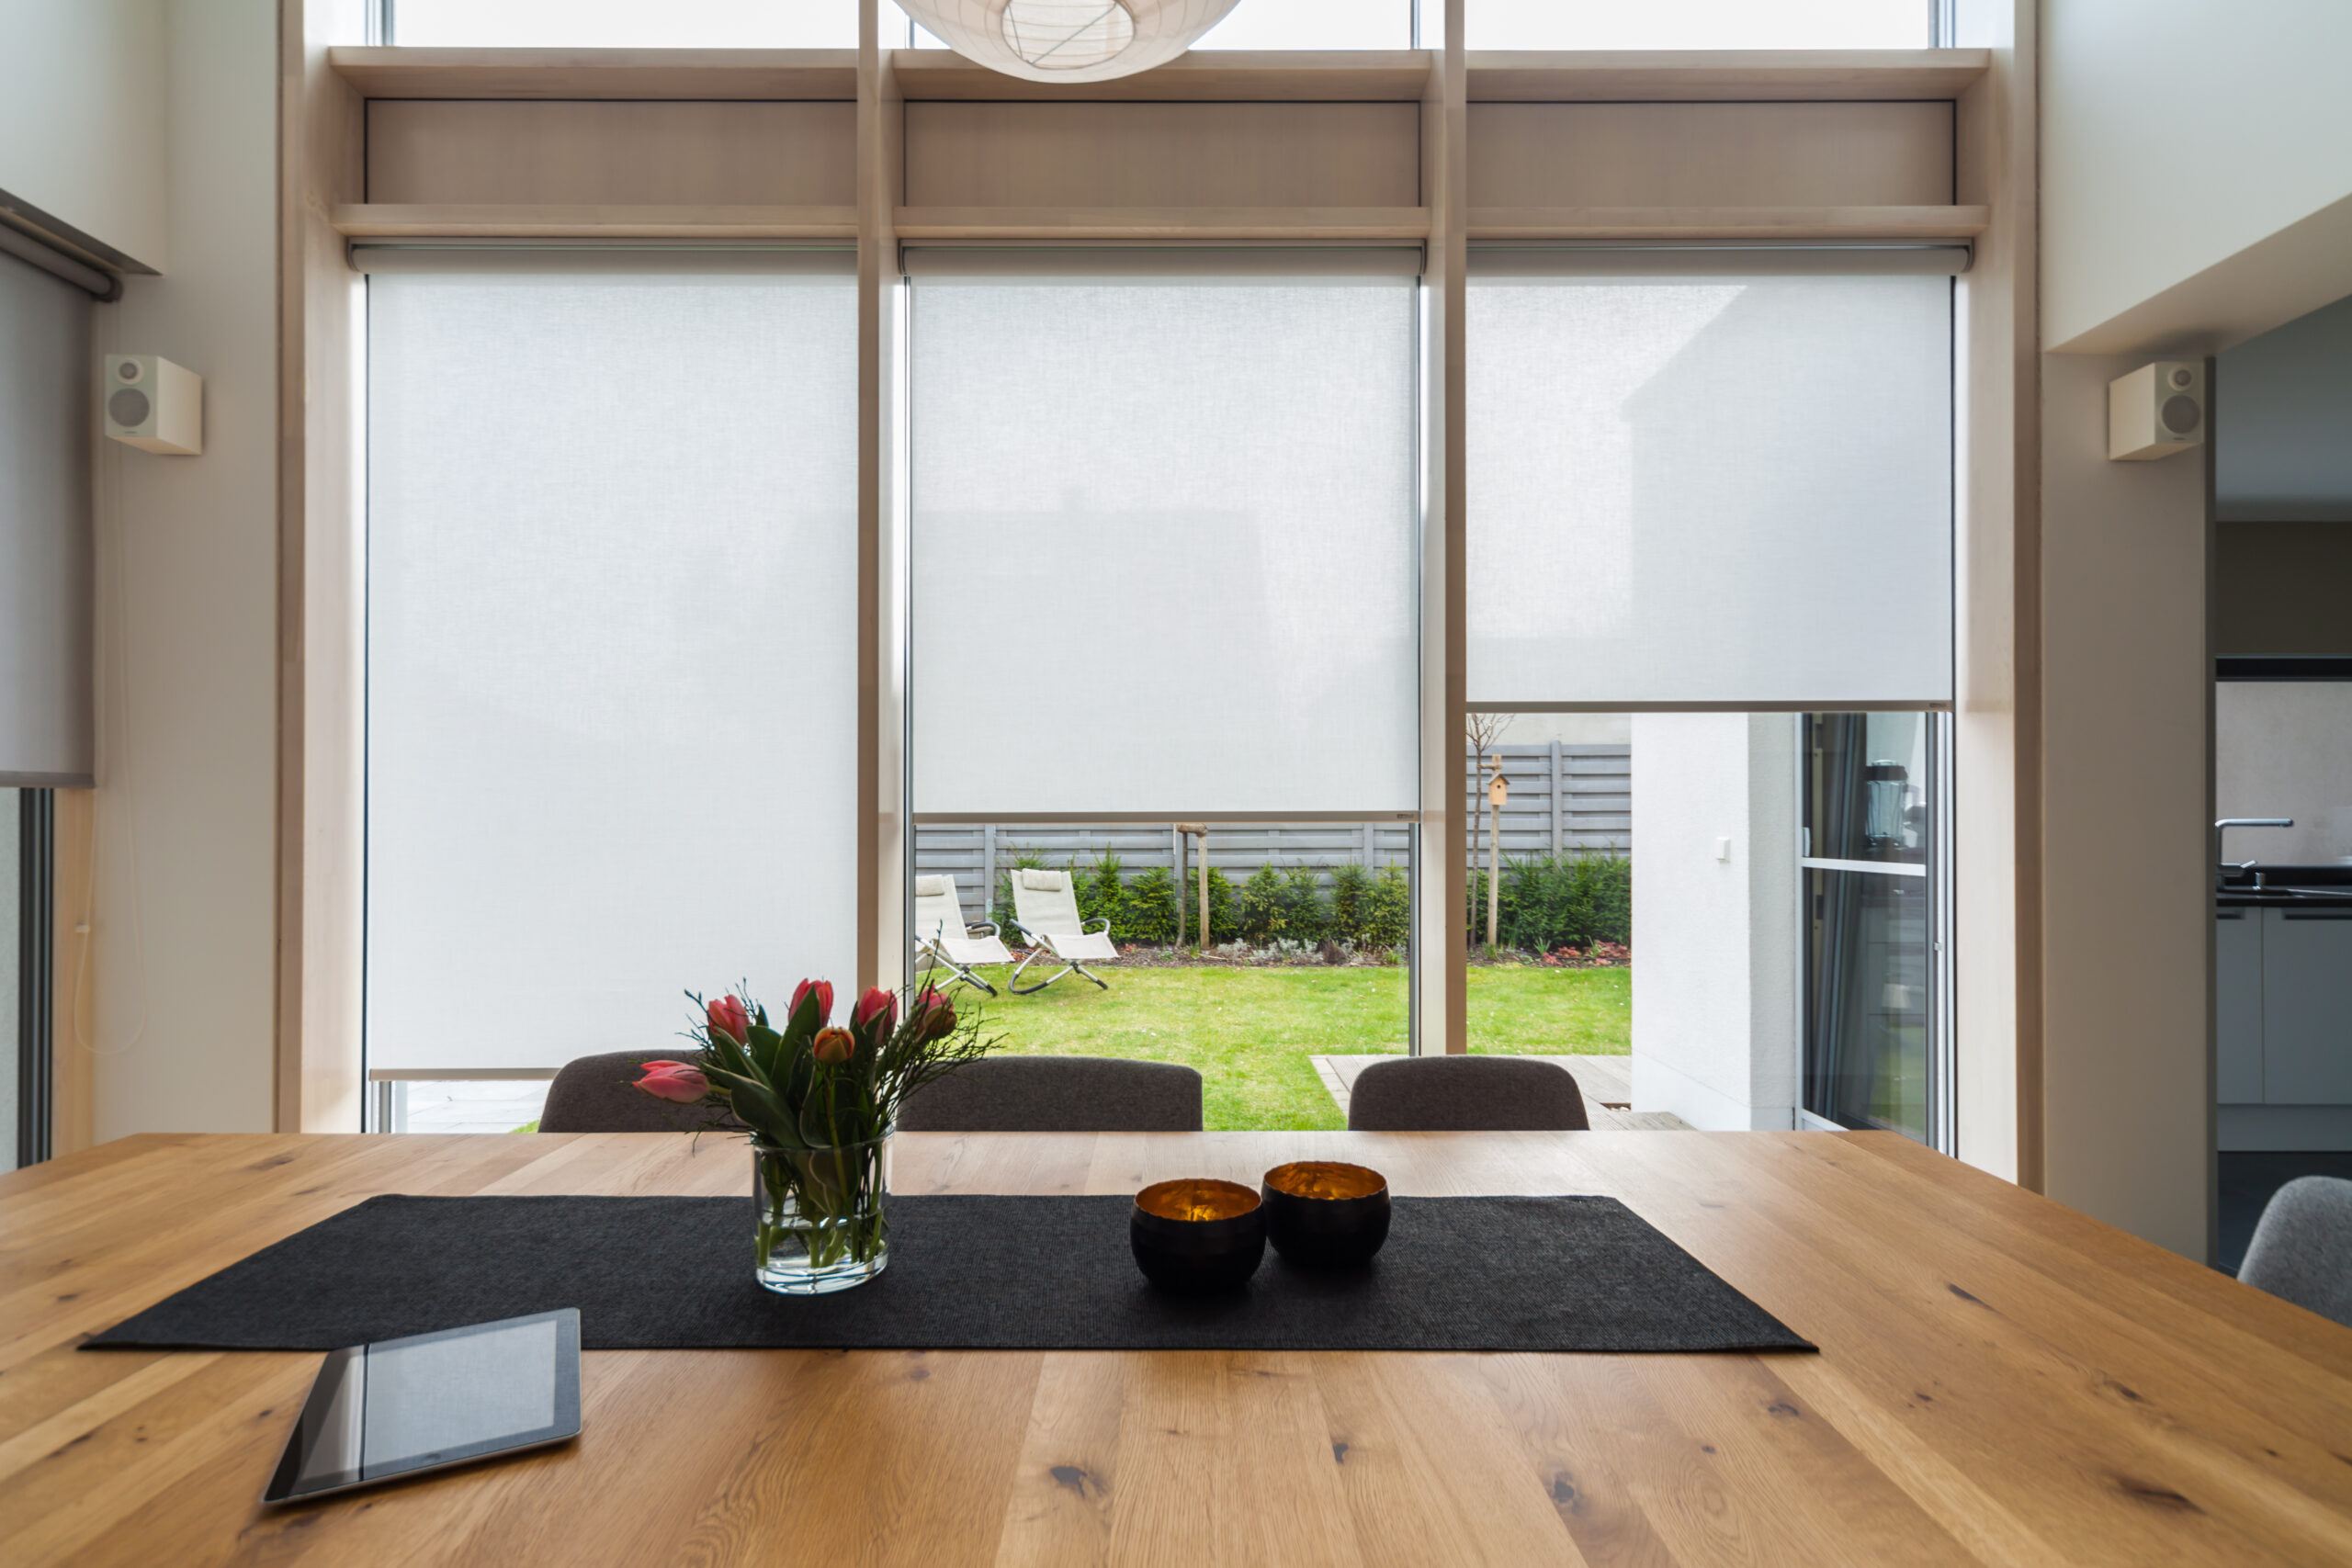 Modernes Esszimmer mit großem Fenster zum Garten, angereichert mit zahlreichen Referenzen. Raumausstattung Merget | Goethestraße 43 | 63814 Mainaschaff